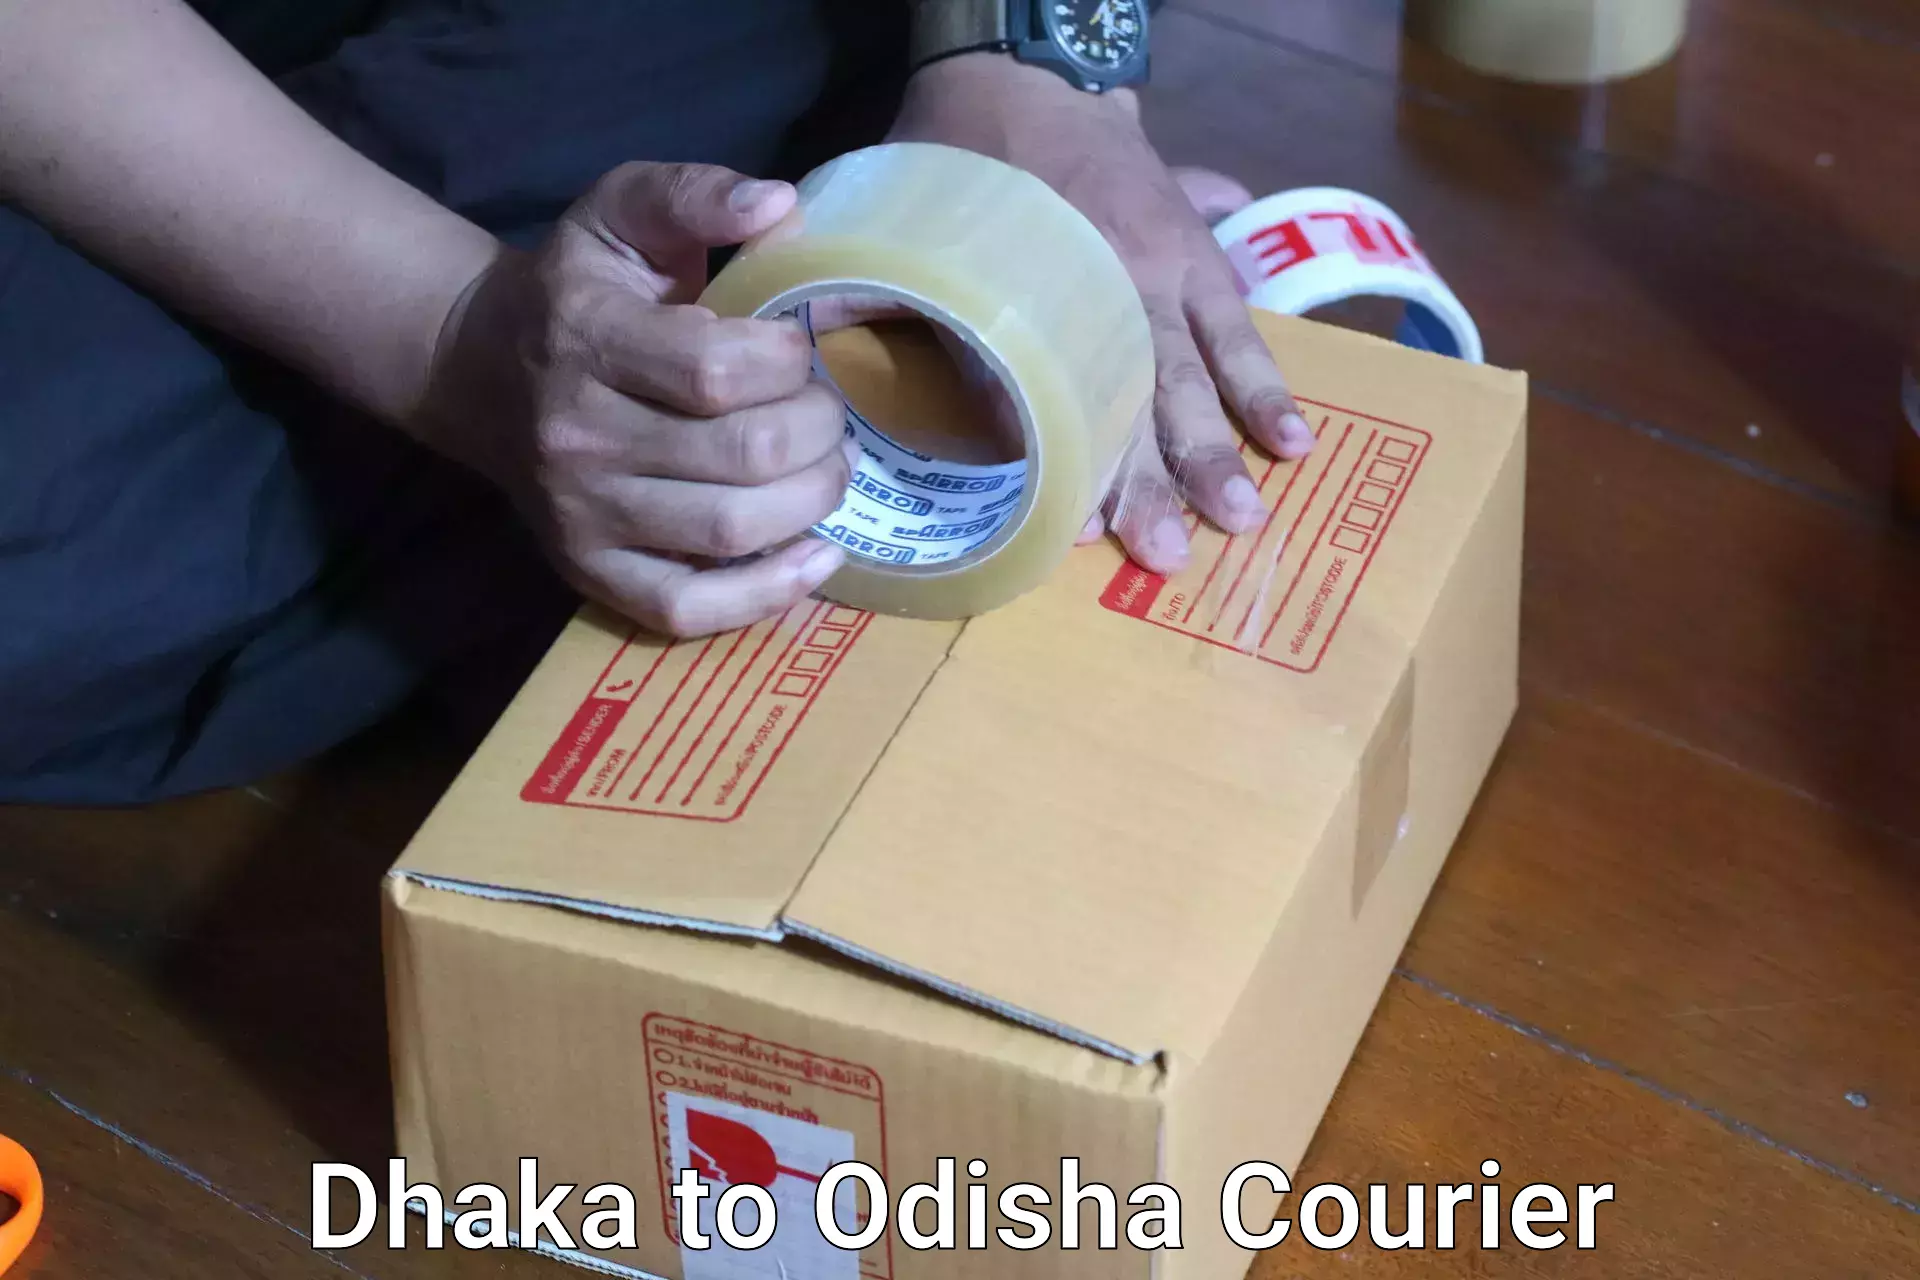 Baggage transport innovation Dhaka to Odisha